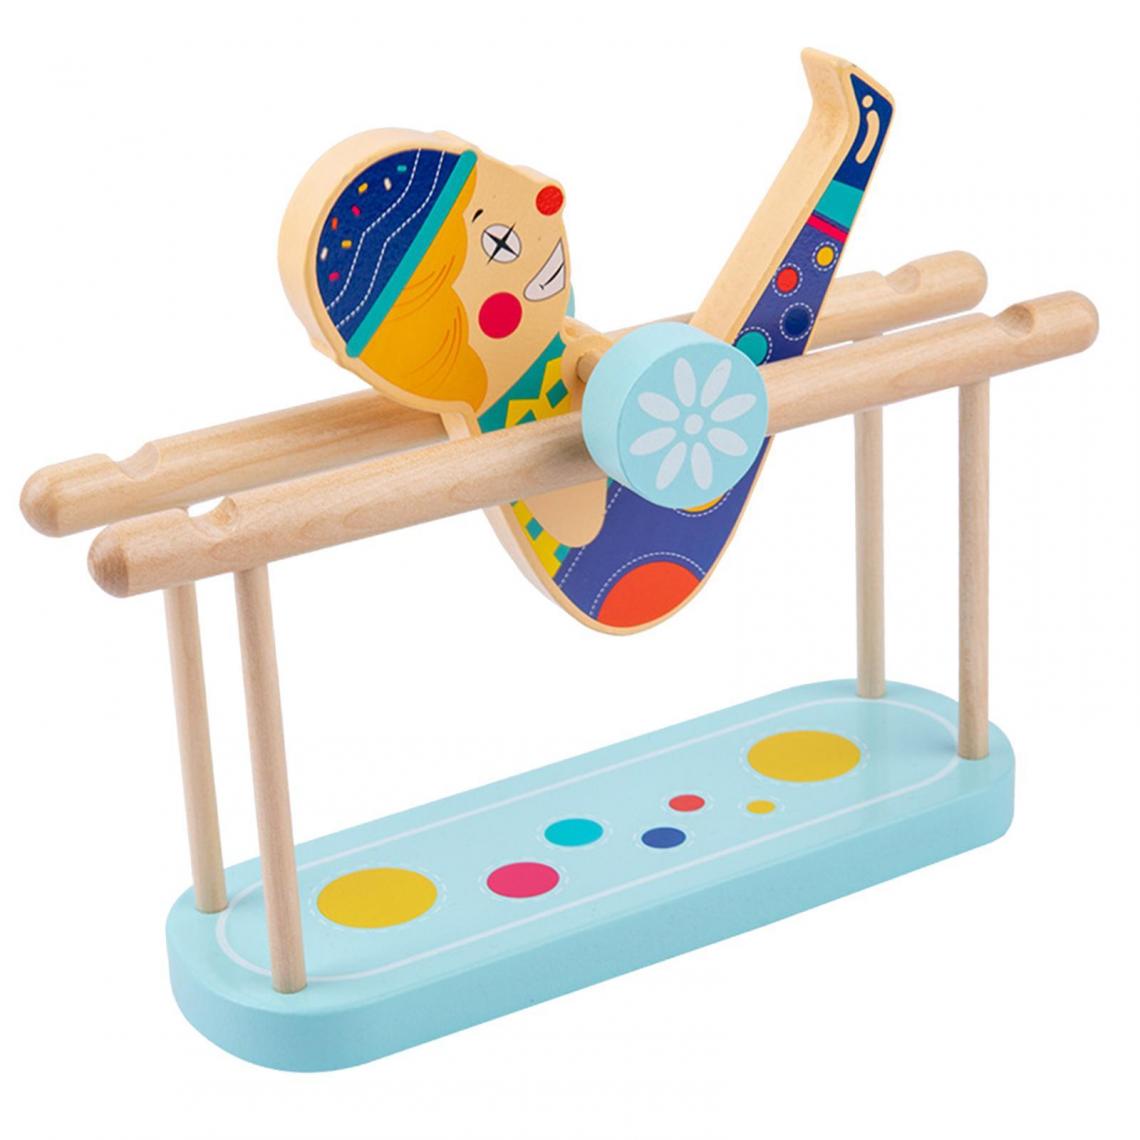 marque generique - Puzzles en bois jeu de roulement jouets éducatifs - Jeux éducatifs